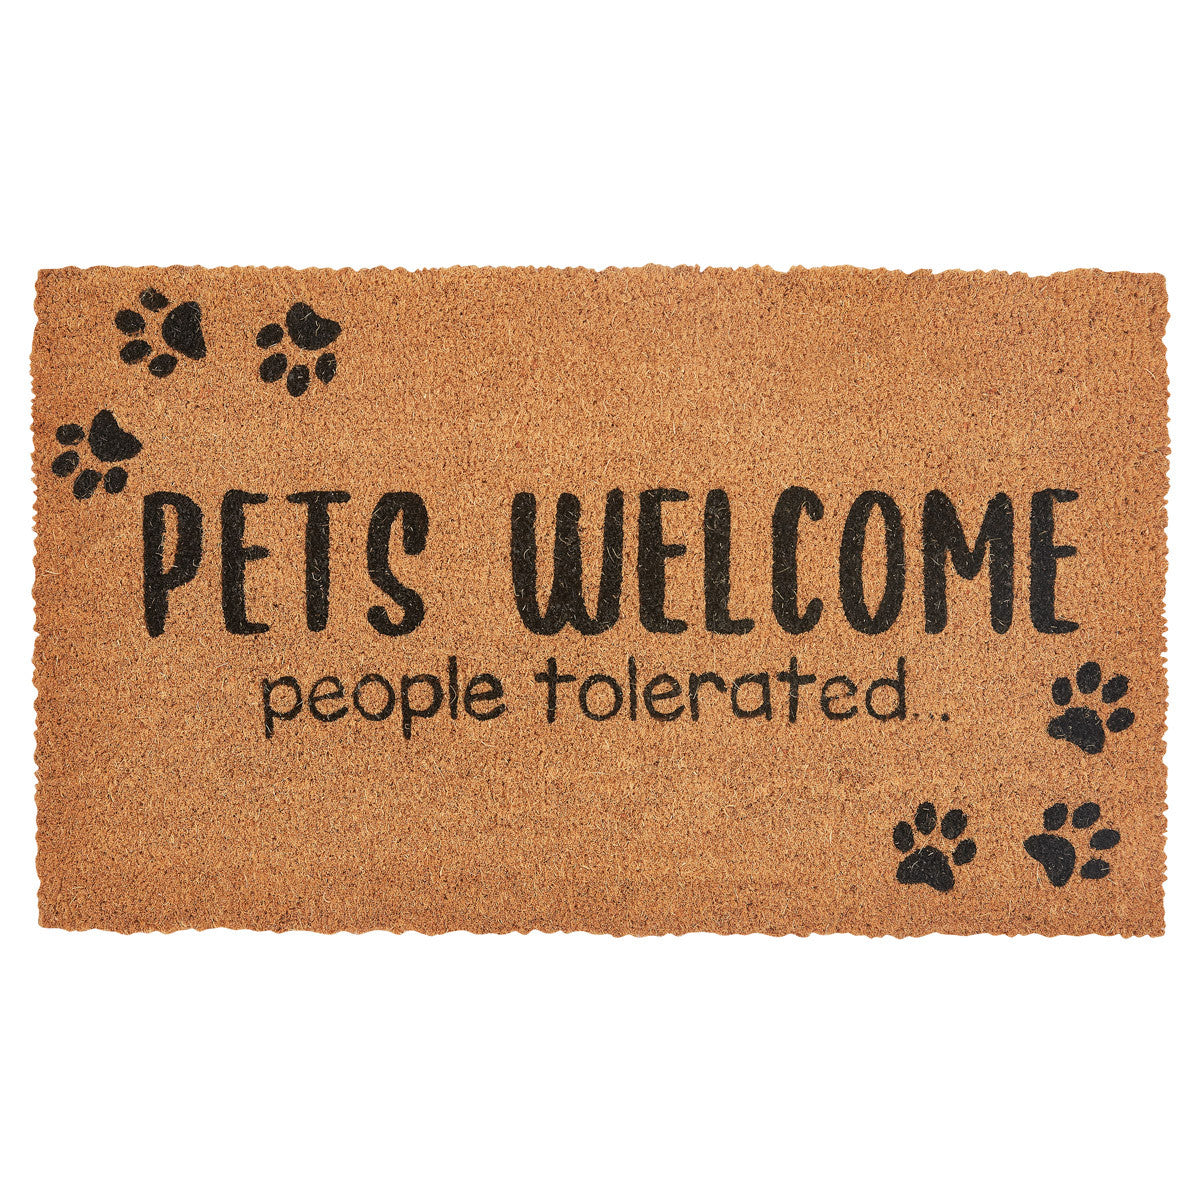 Pets Welcome ( People Tolerated ) Doormat